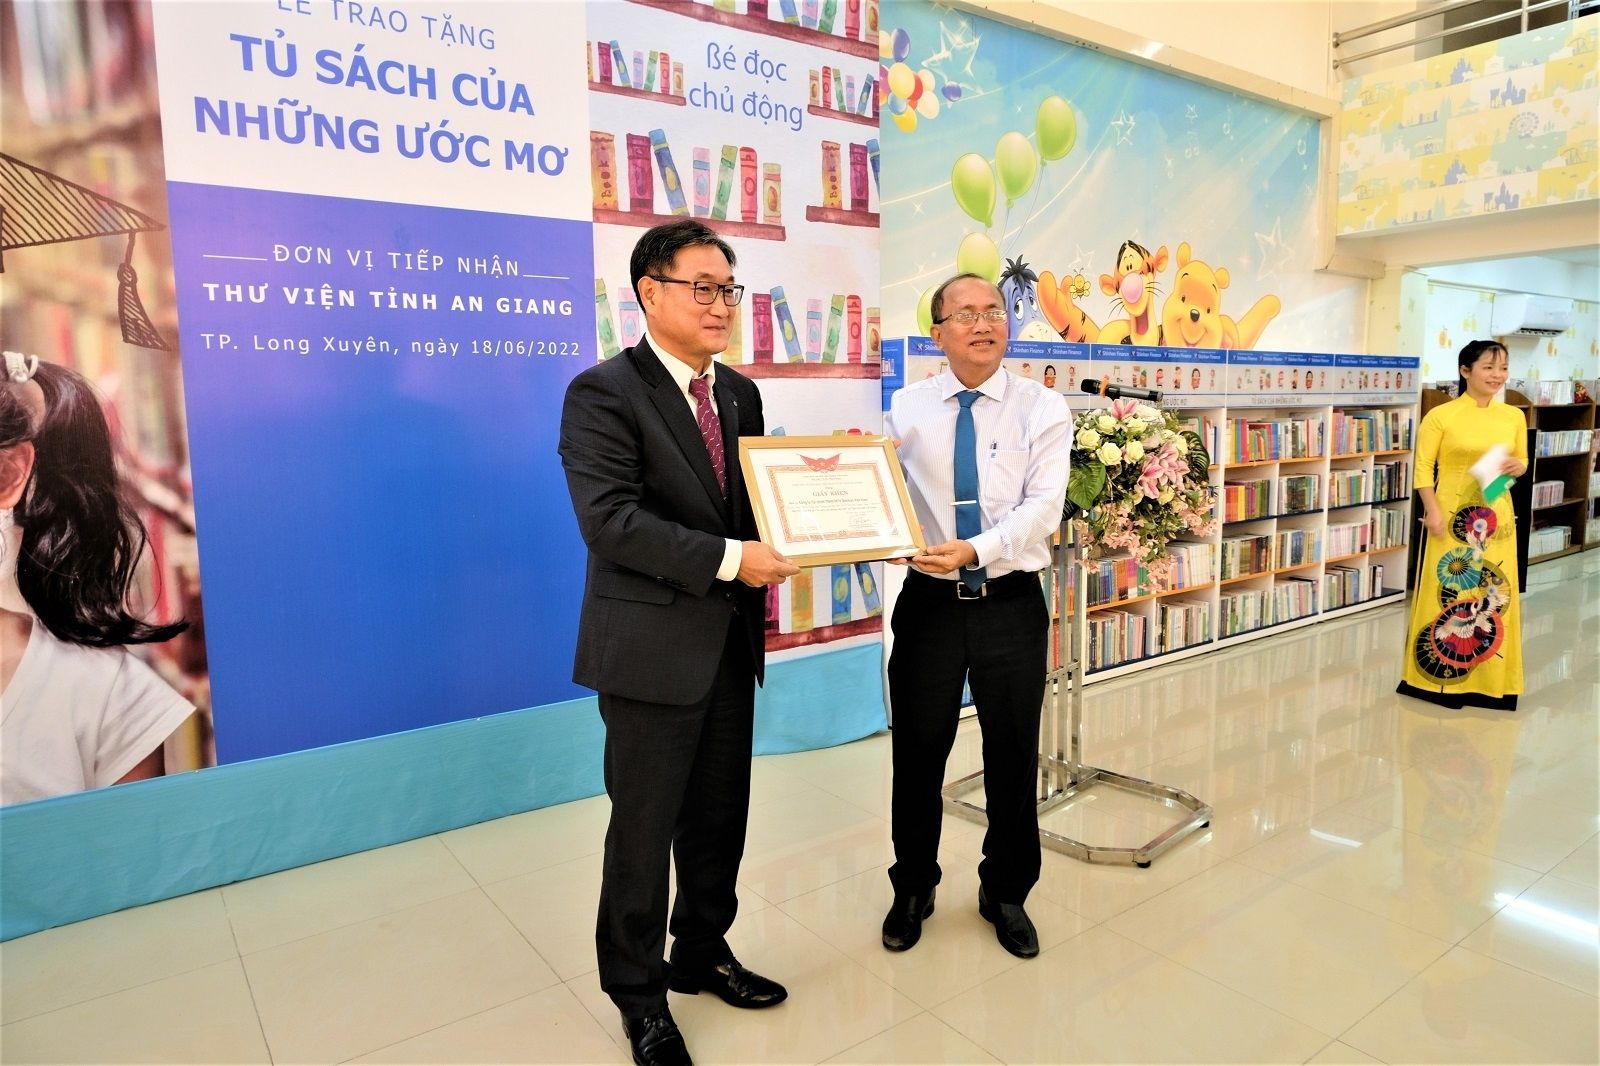 Shinhan Finance trao tặng “Tủ sách của những ước mơ” cho Thư viện tỉnh An Giang